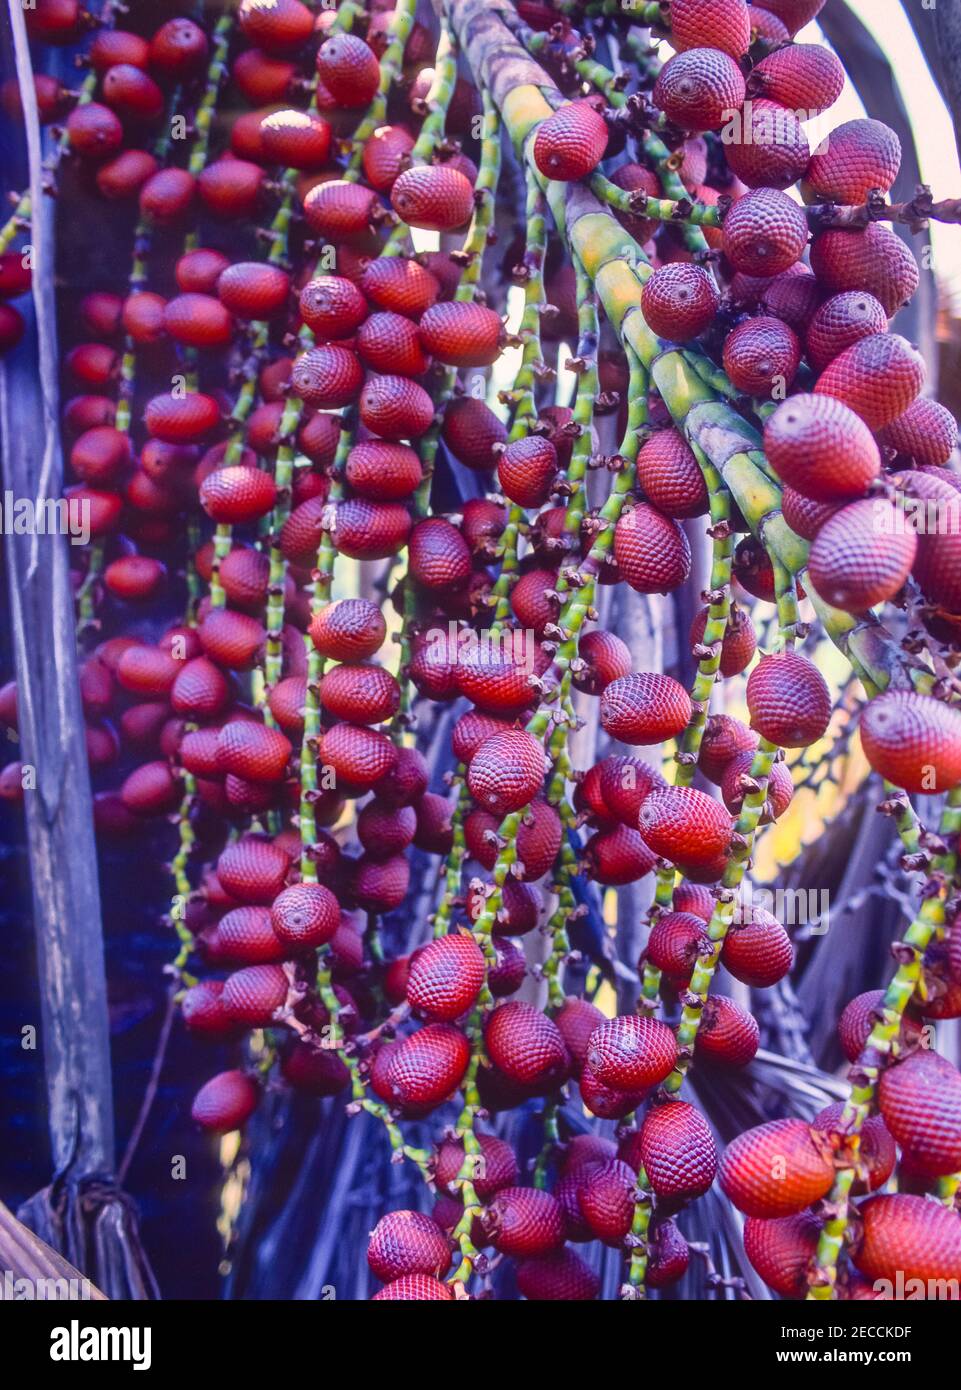 ÉTAT D'APURE, VENEZUELA - Moriche de palme, fruit sur arbre. Banque D'Images